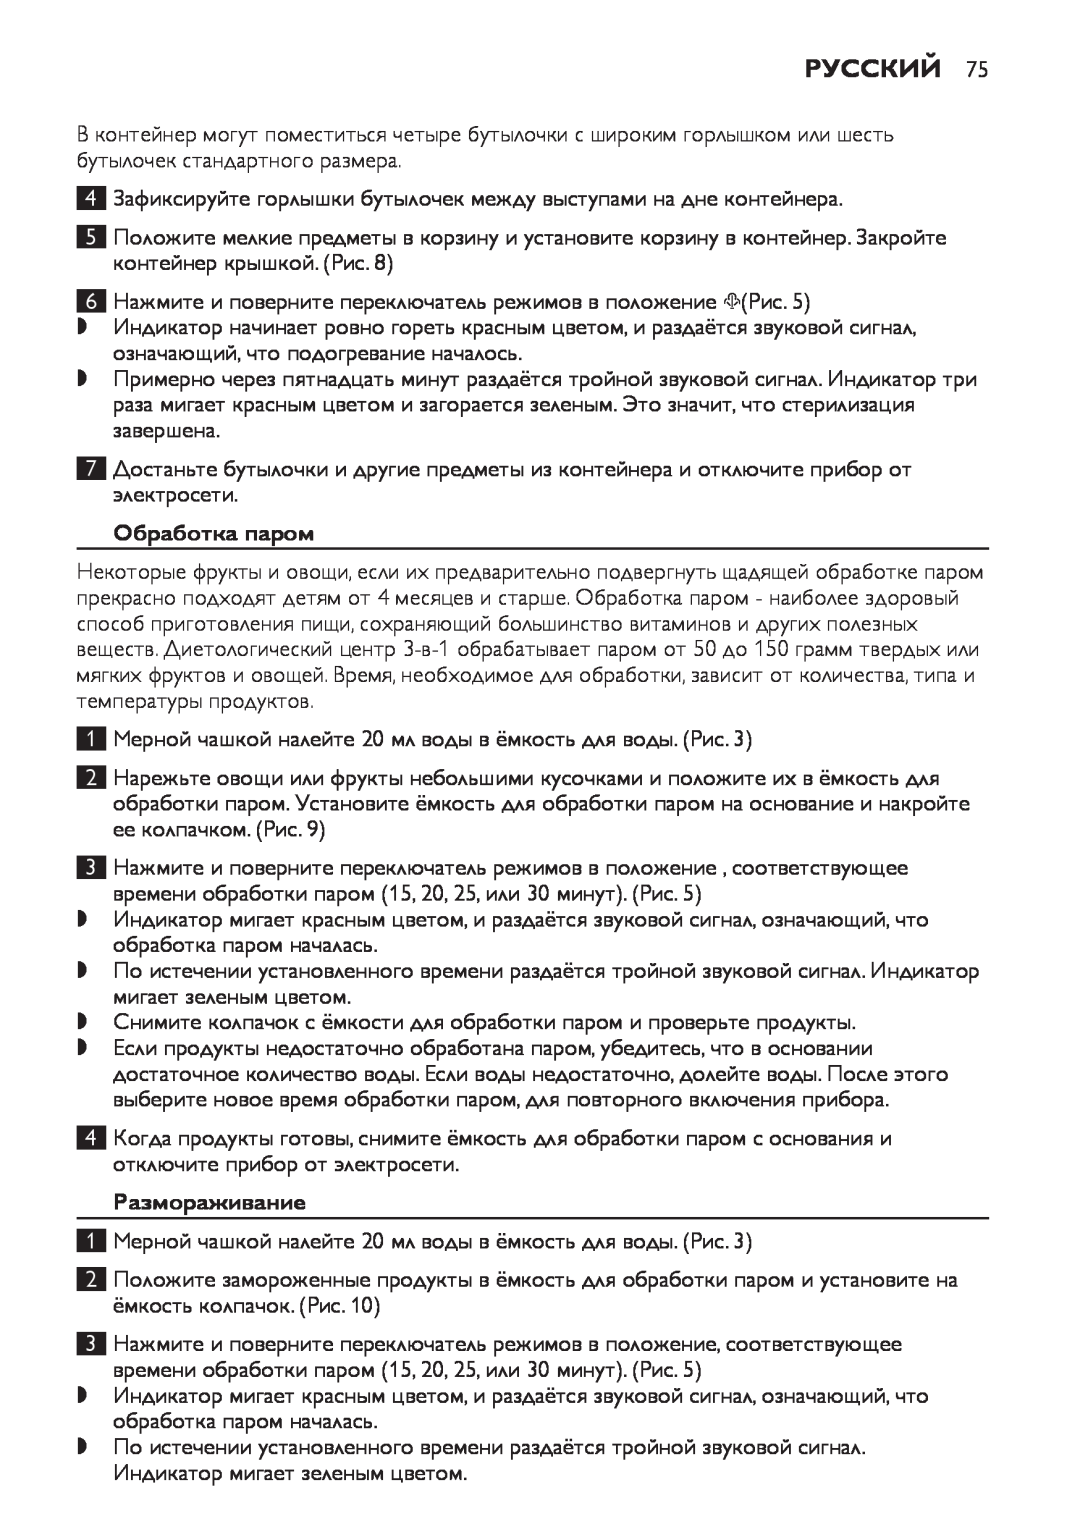 Philips SCF280 manual Обработка паром, Размораживание, Русский 